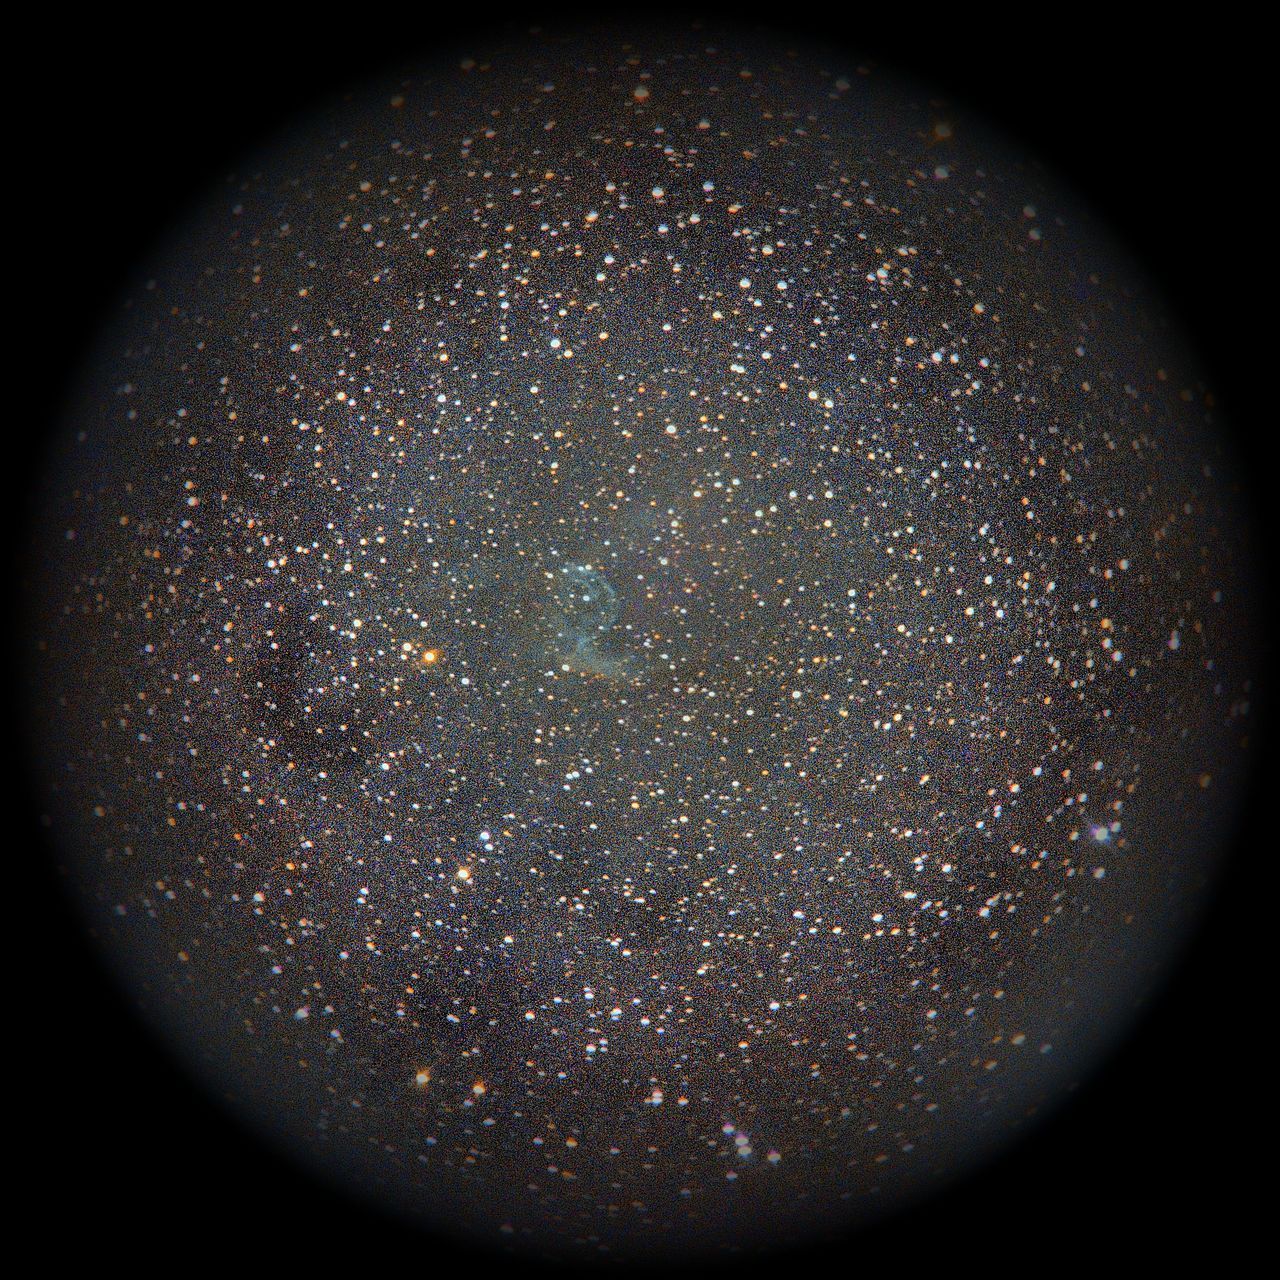 Image of NGC2359